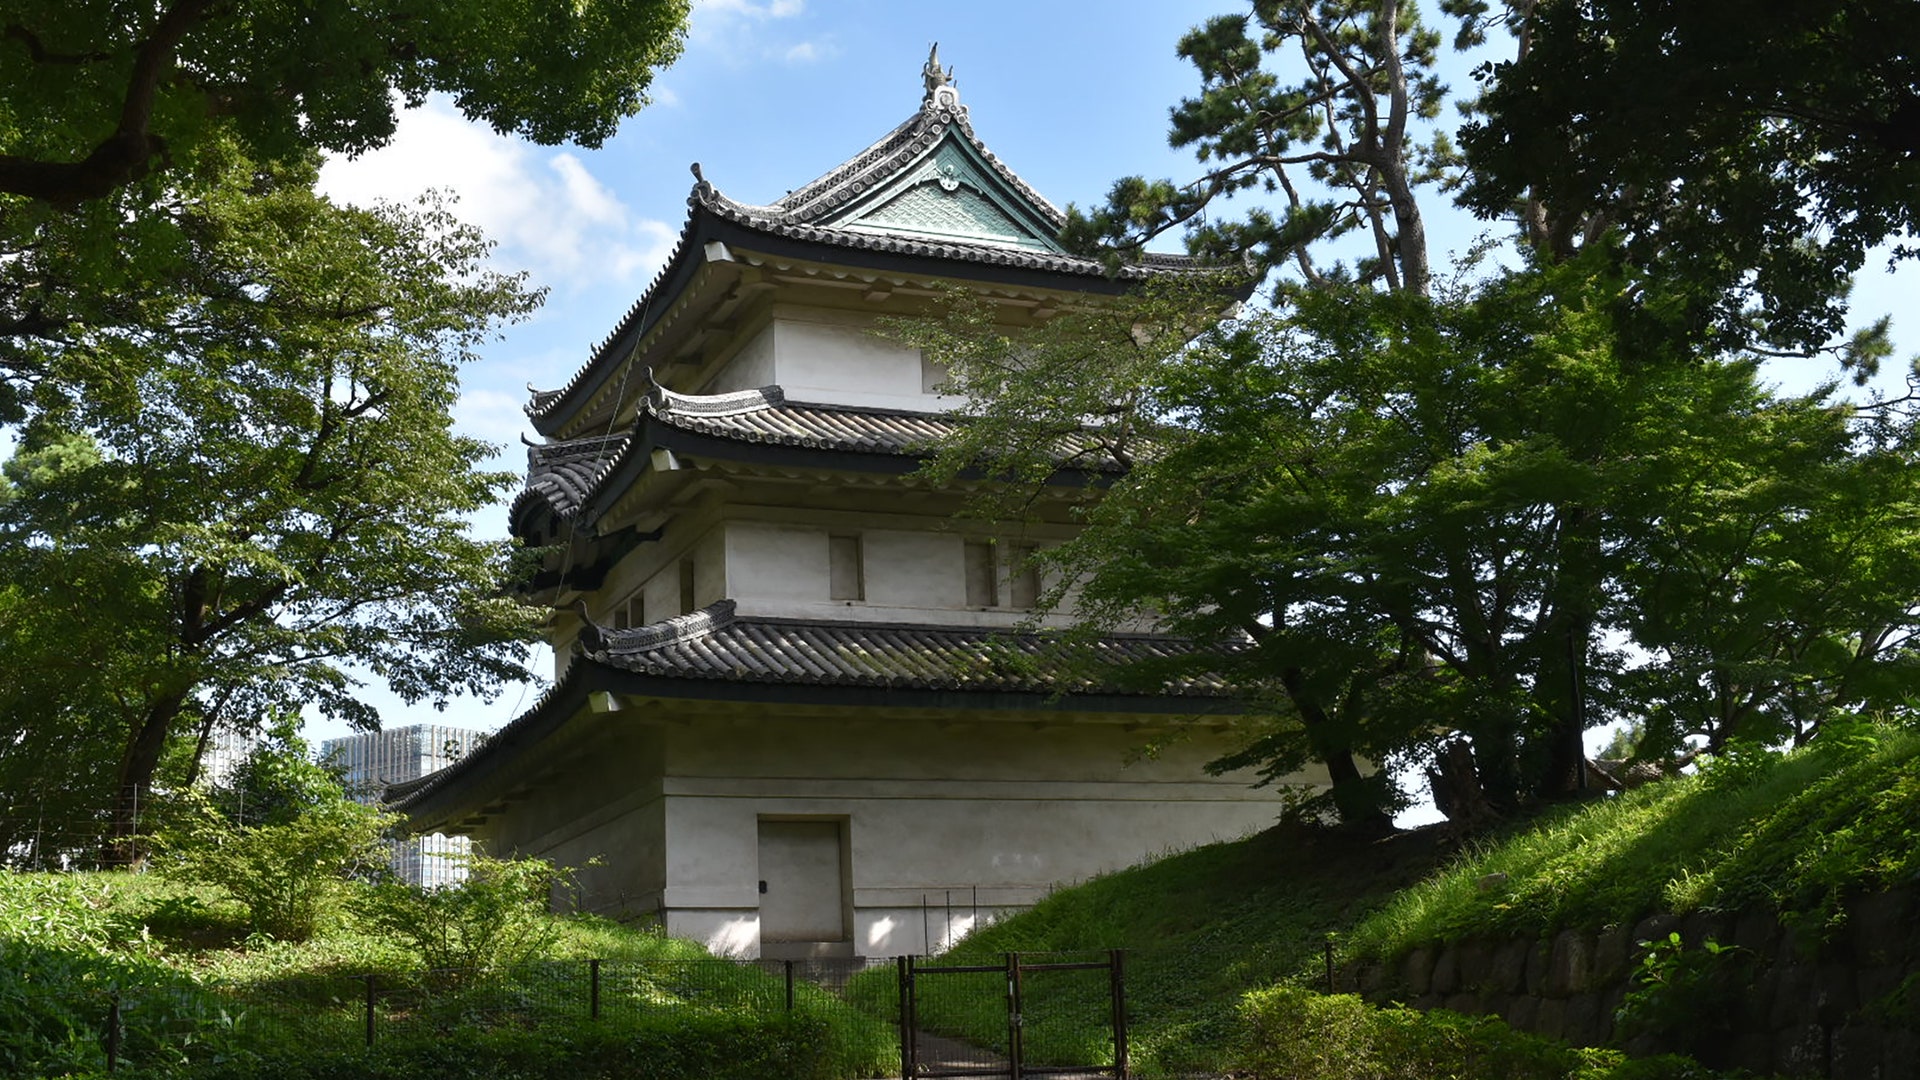 「代用天守」がいまに残る幕府の中枢、江戸城本丸跡──東京にみつける江戸 第18回